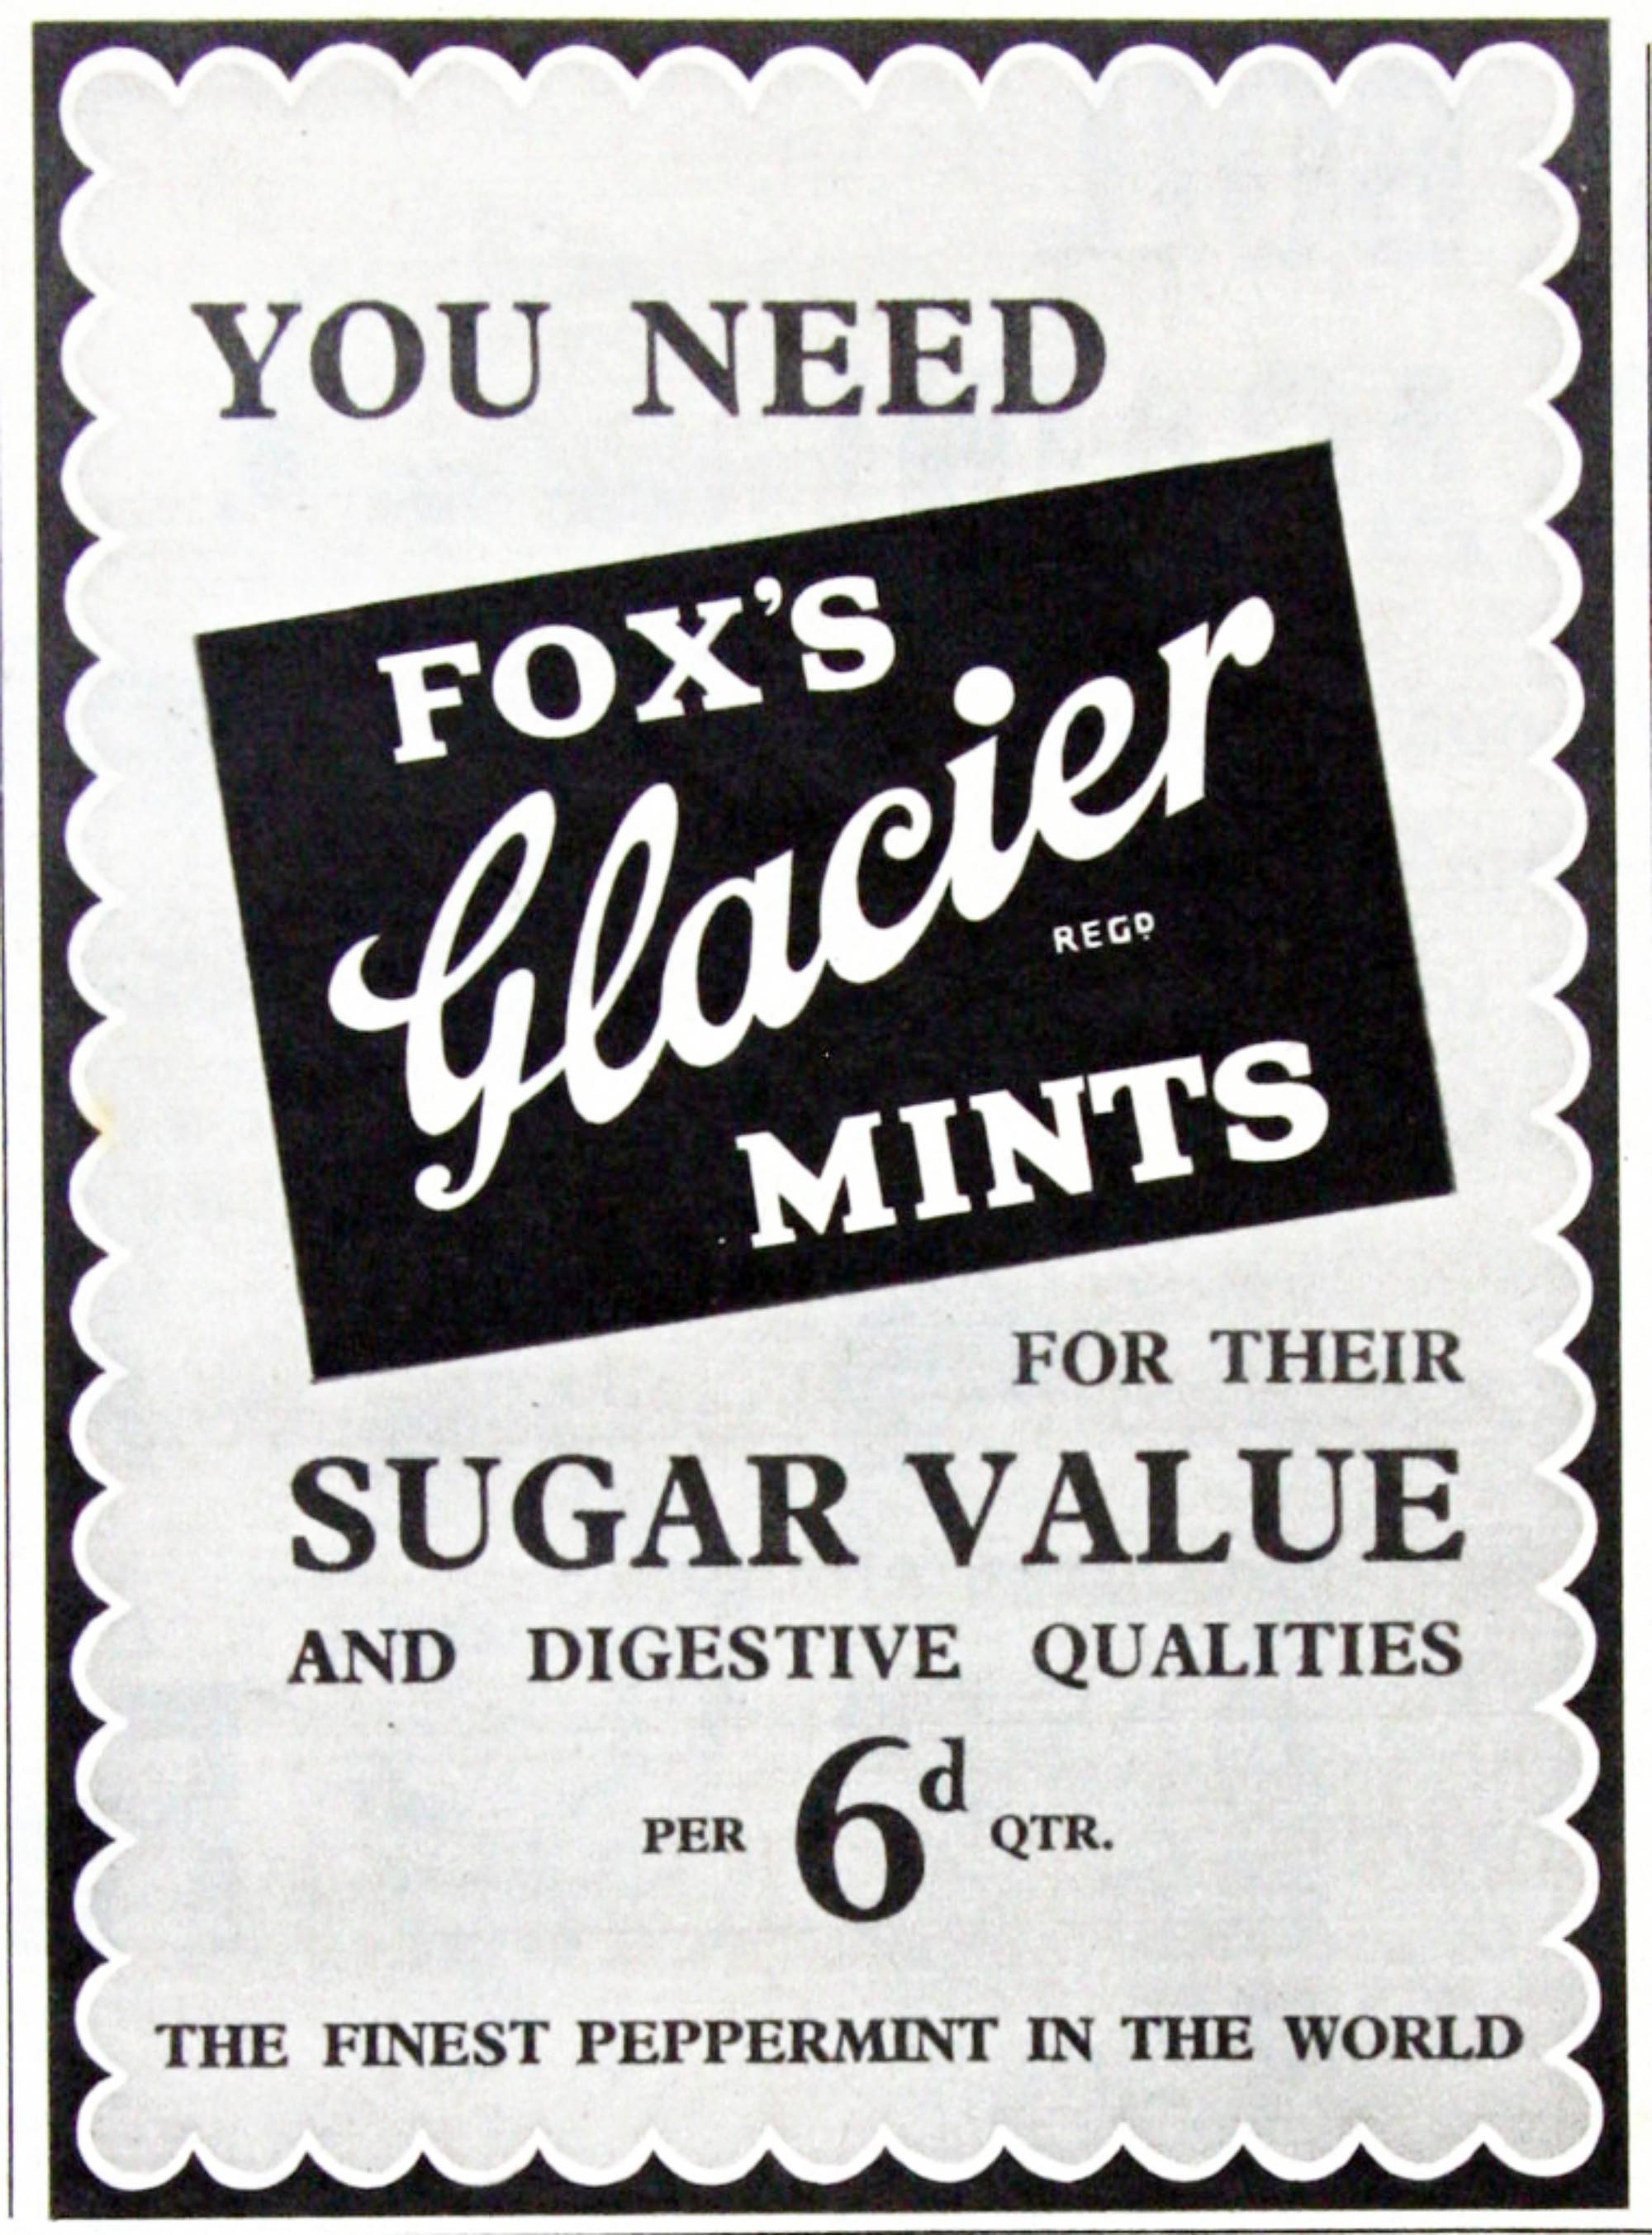 Advert for Fox’s Glacier Mints - 